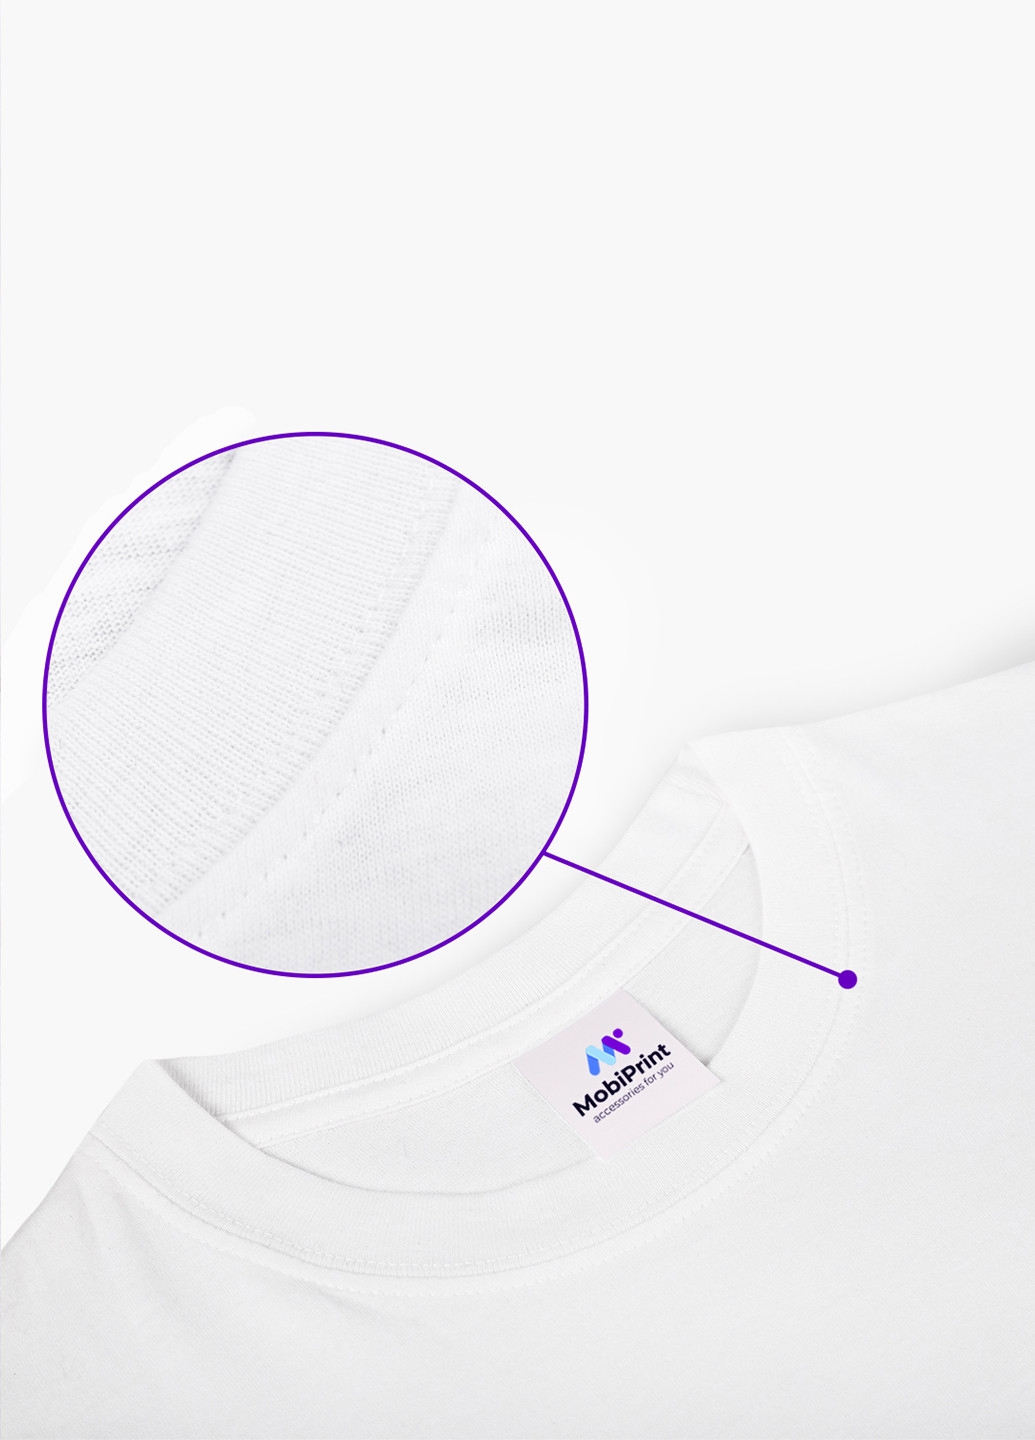 Белая демисезонная футболка дитяча тихиро огіно сен і хакуо віднесені примарами (spirited away) білий (9224-2829) 164 см MobiPrint